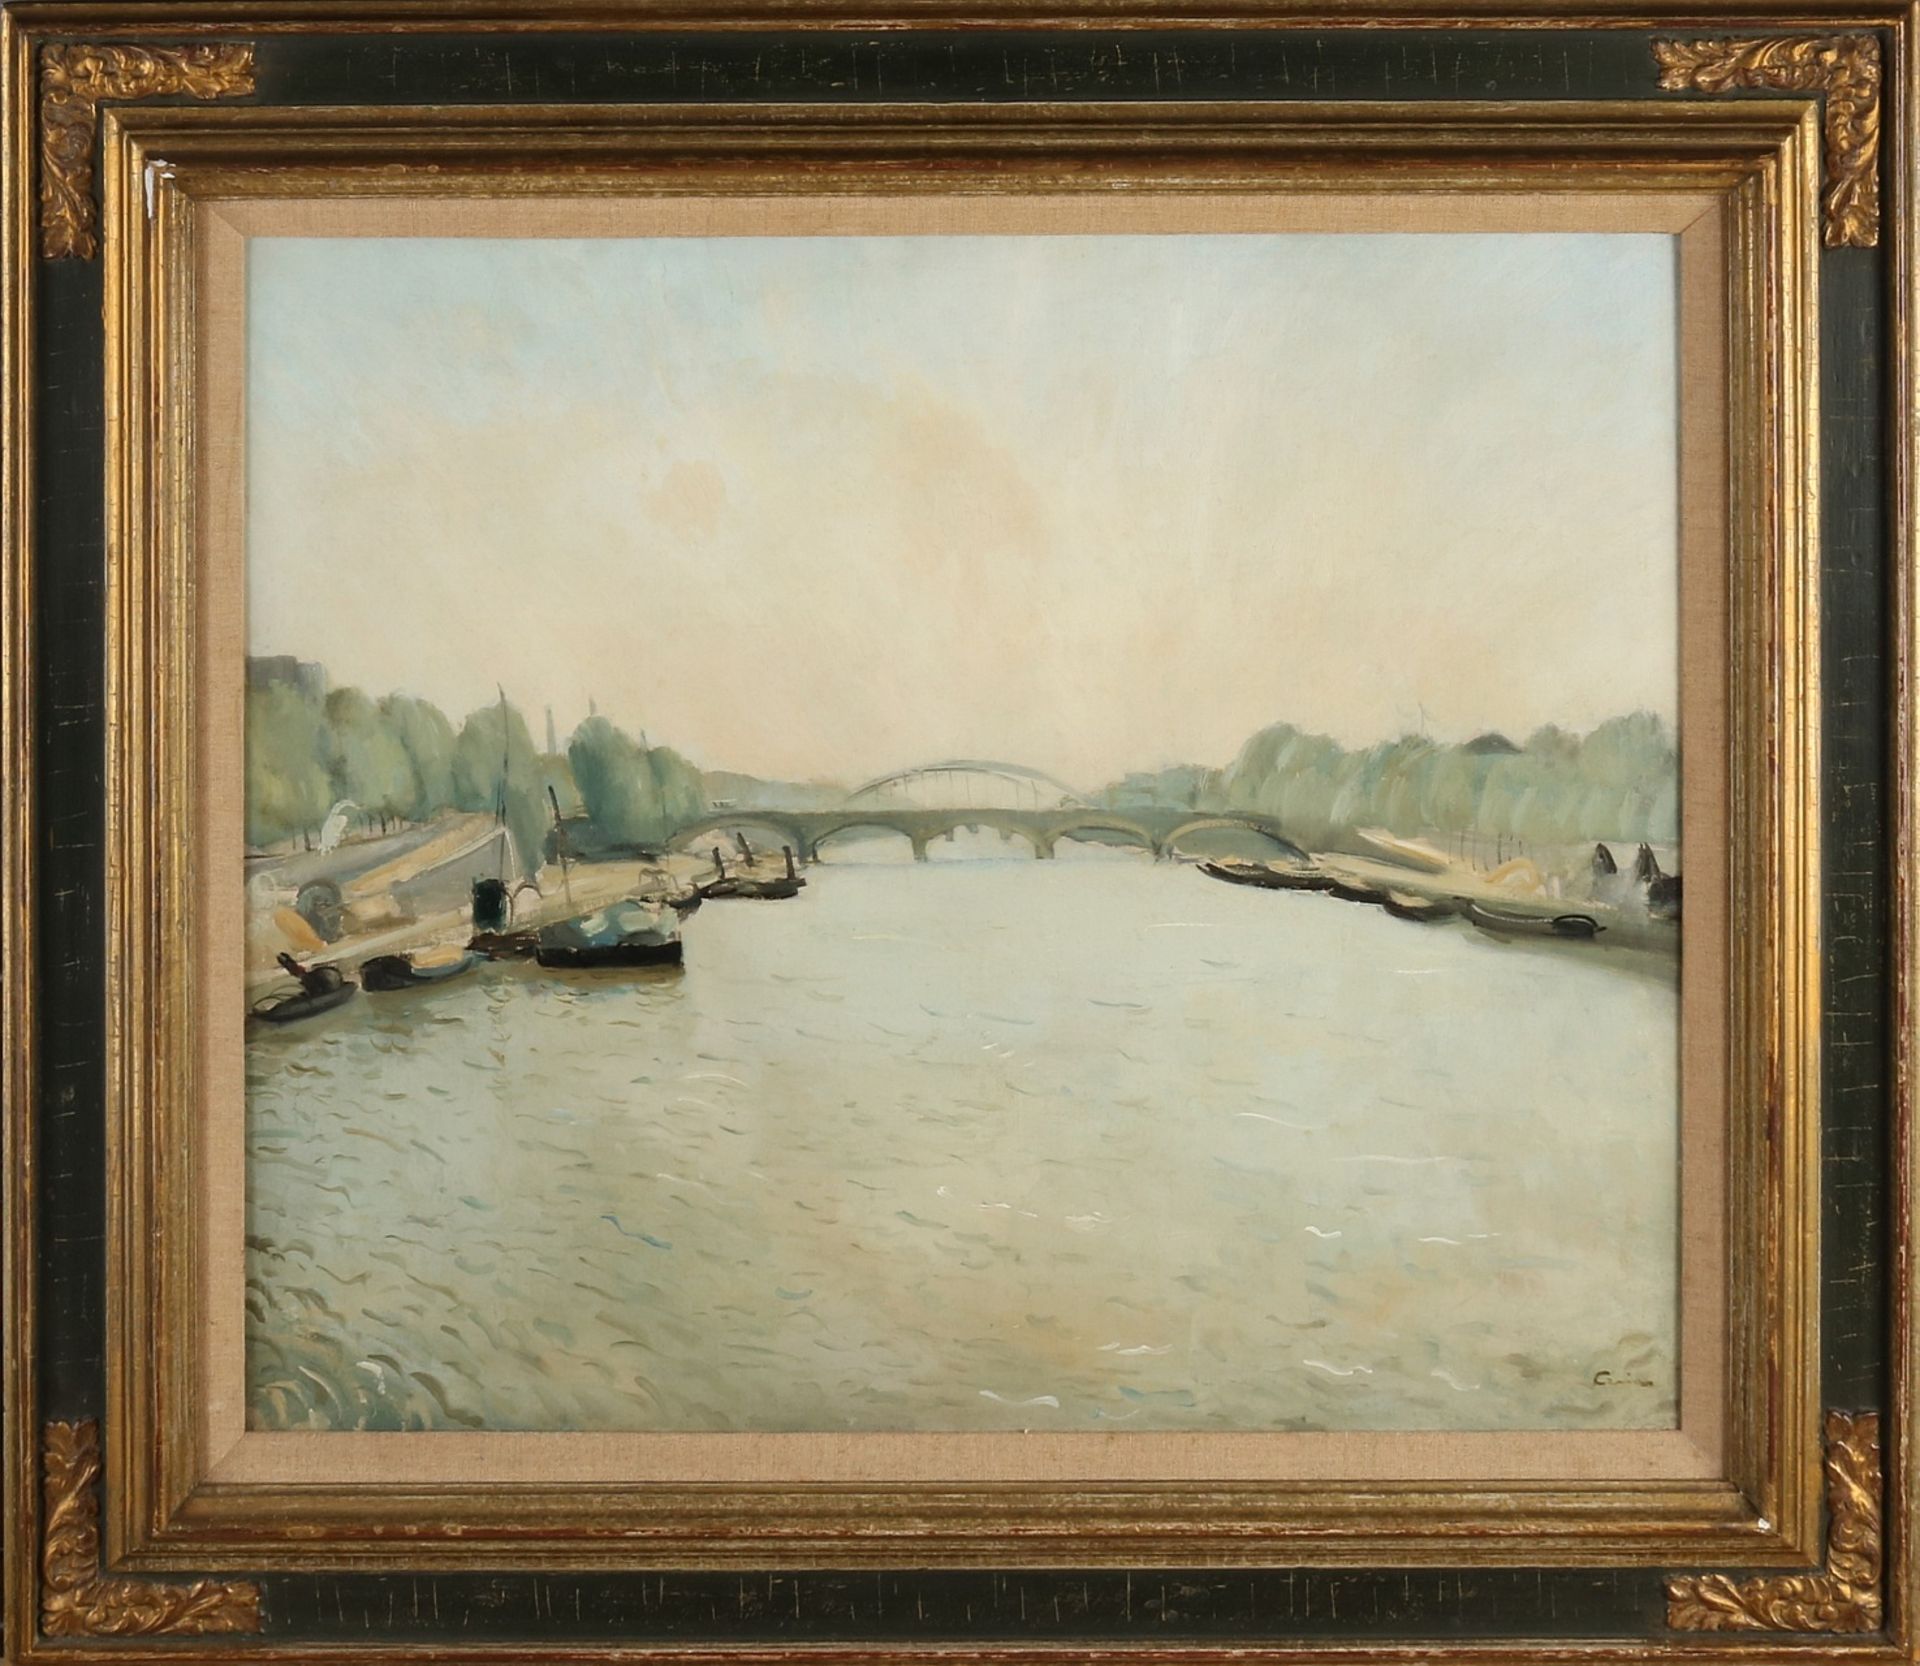 Edmond Ceria, River Seine in Paris